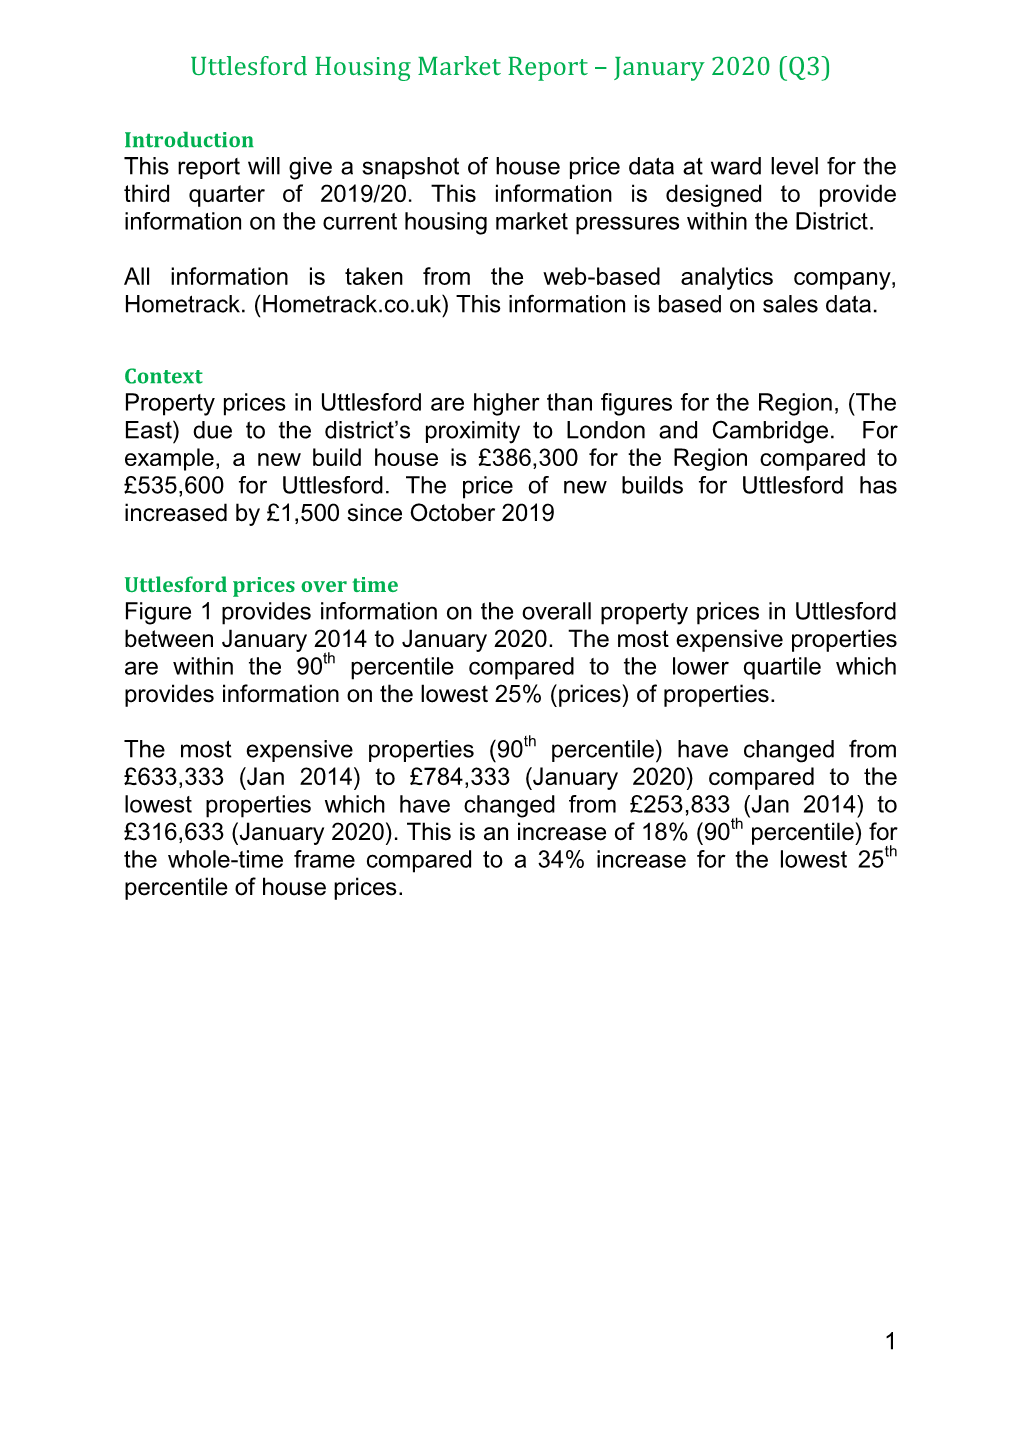 Uttlesford Housing Market Data January 2020